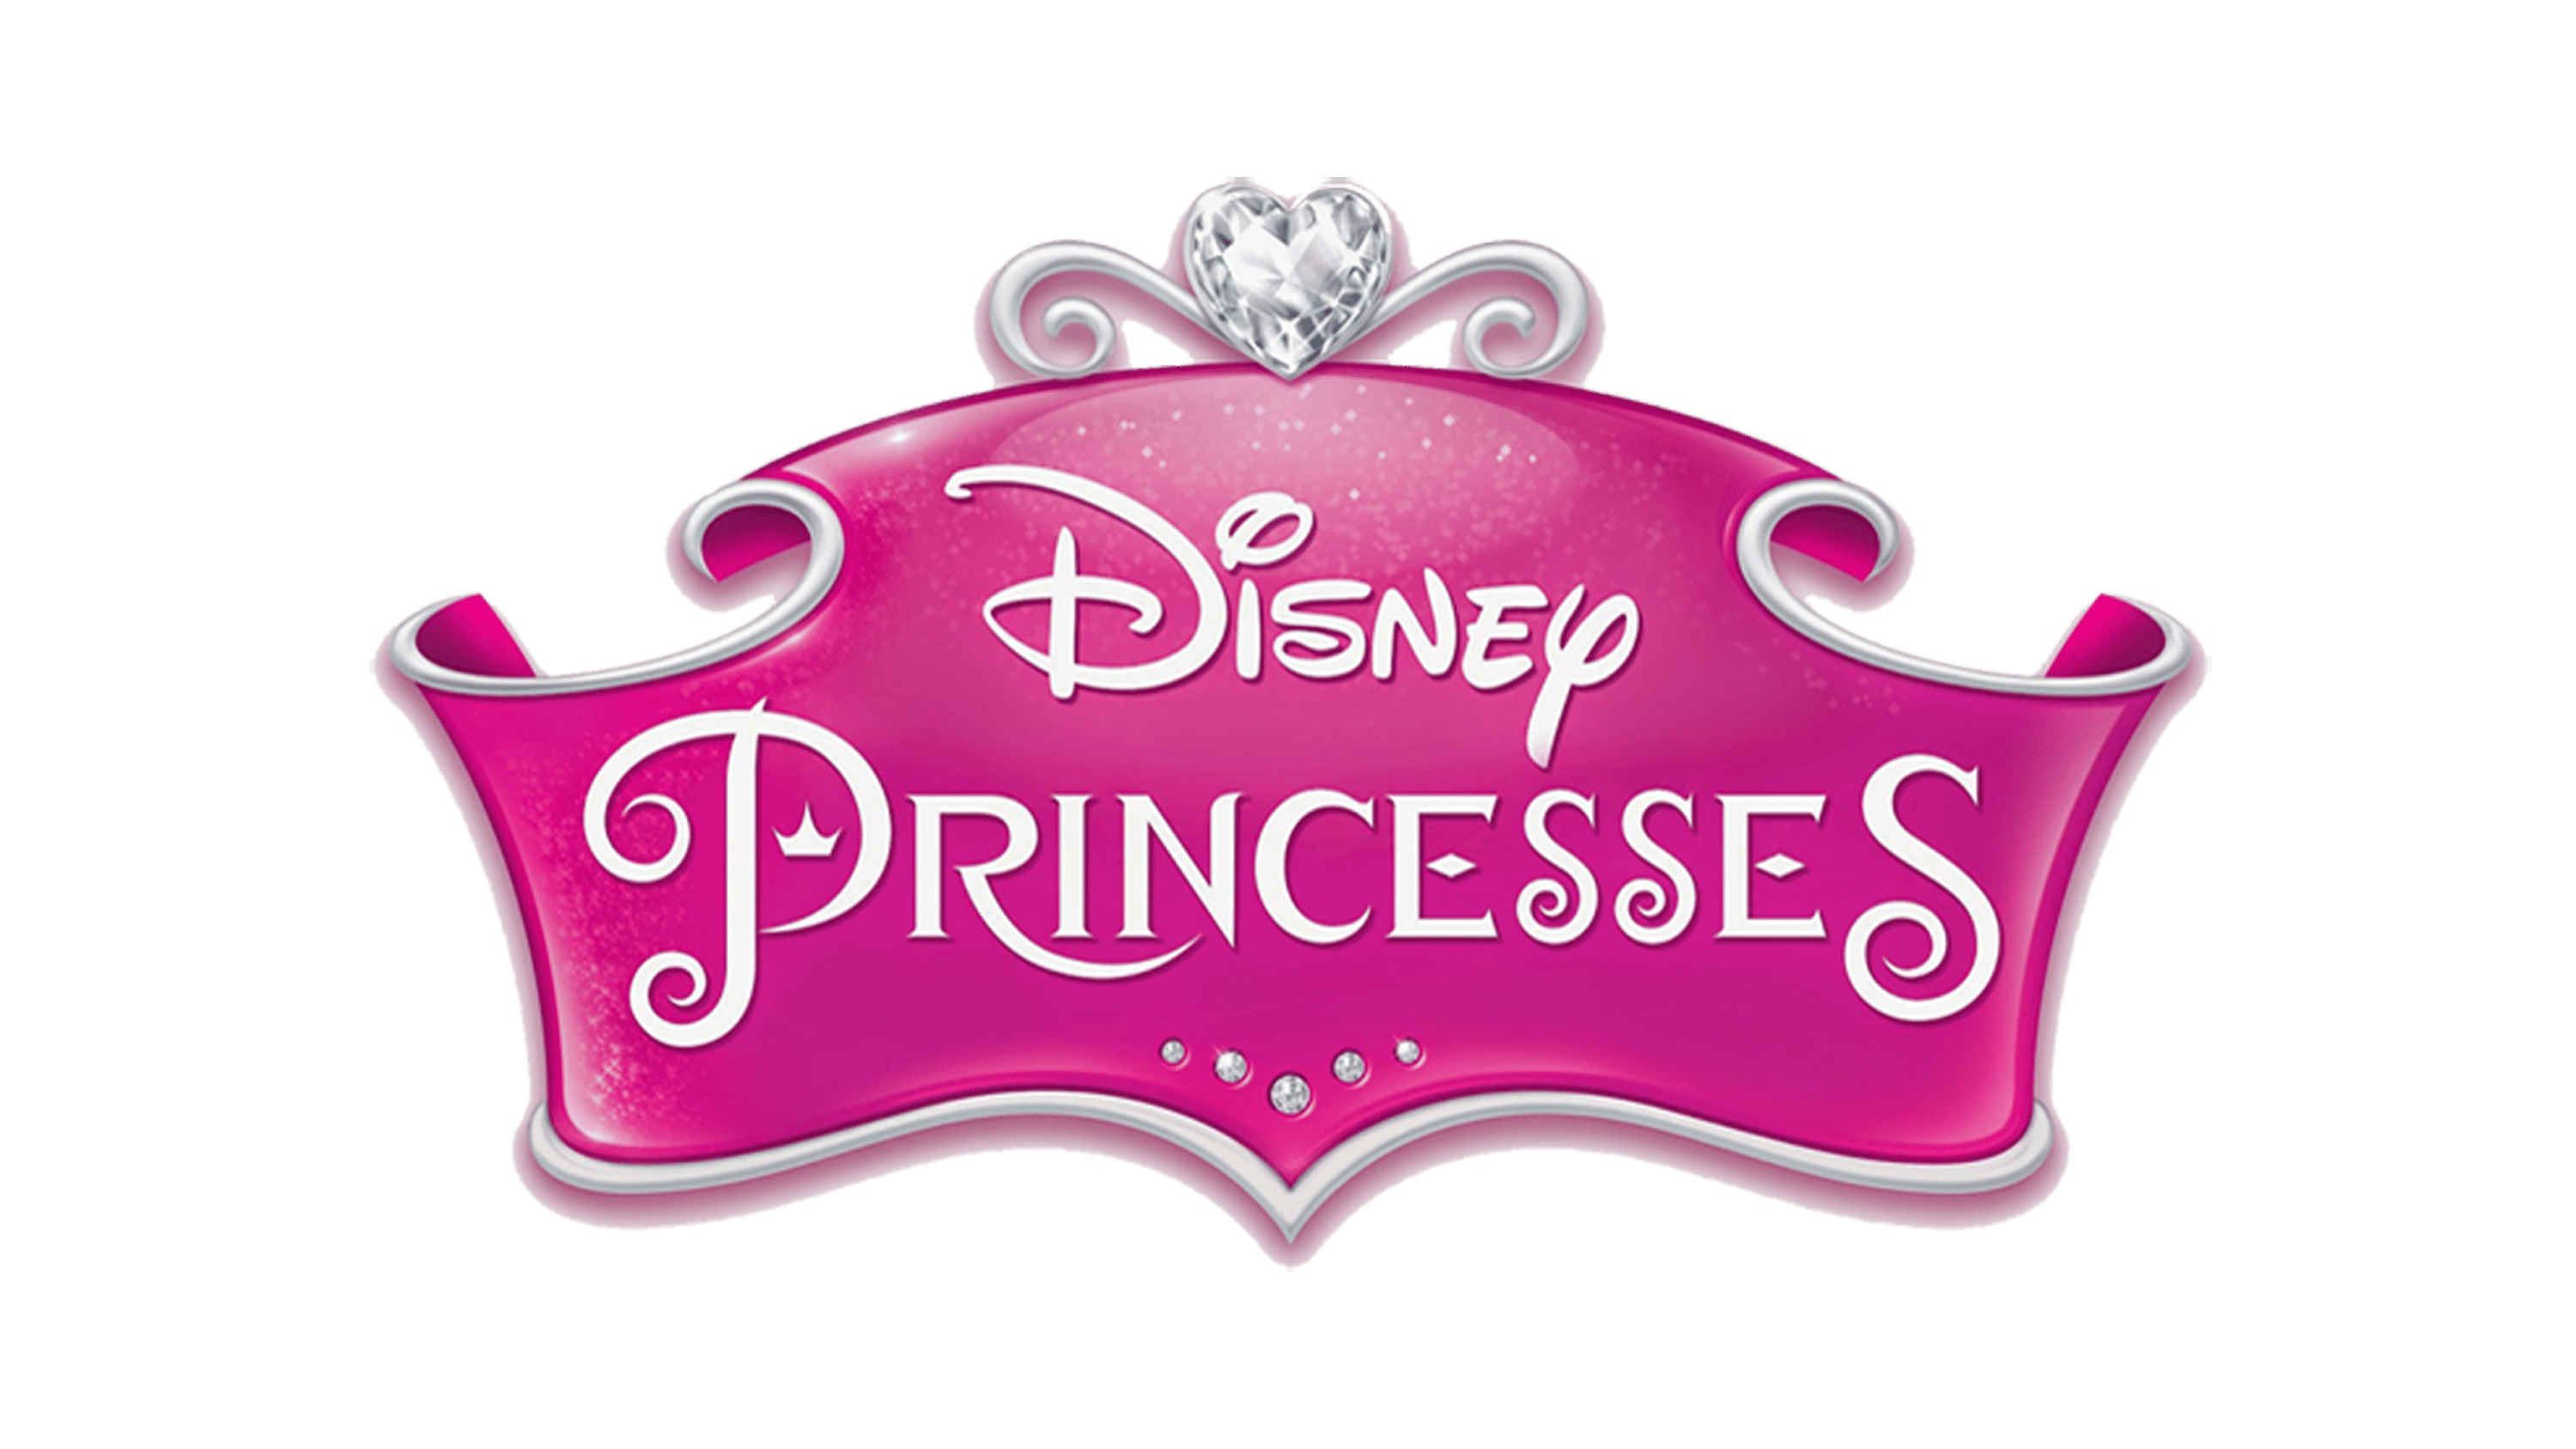 Disney Princess Logos Png Disney Princess Logo Vector Transparent | The ...